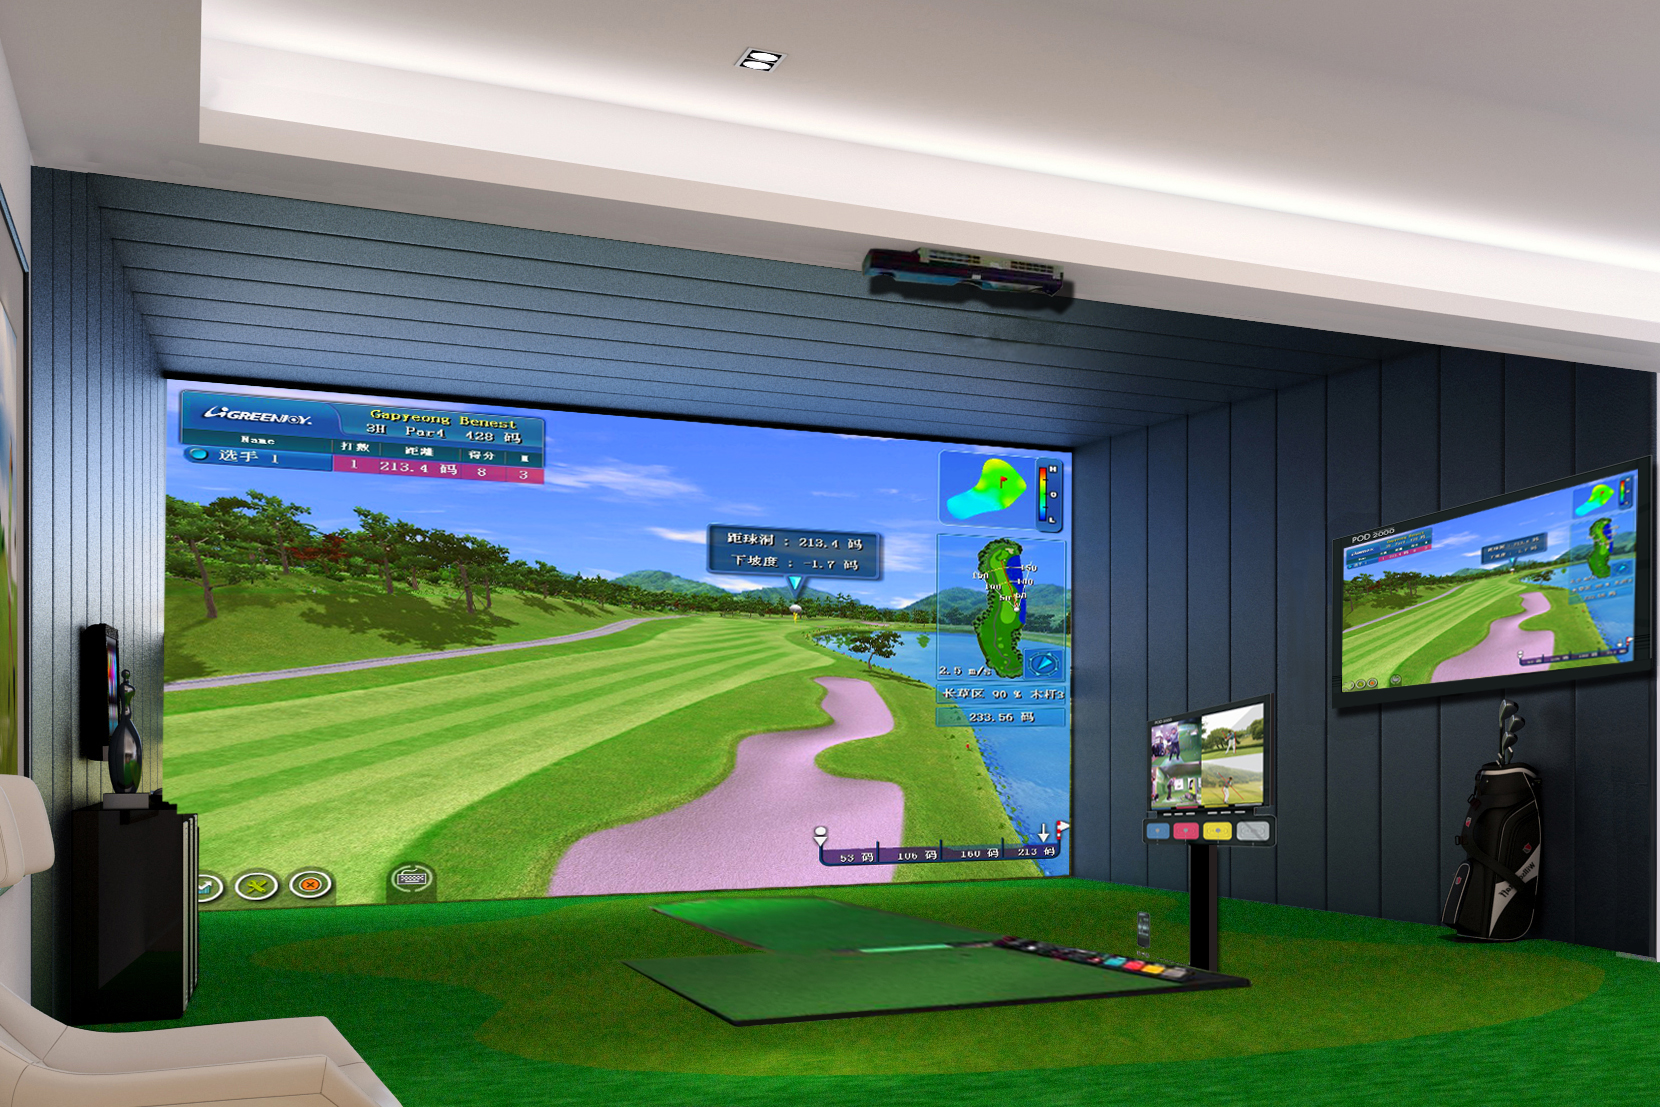 衡泰信室內模擬高爾夫